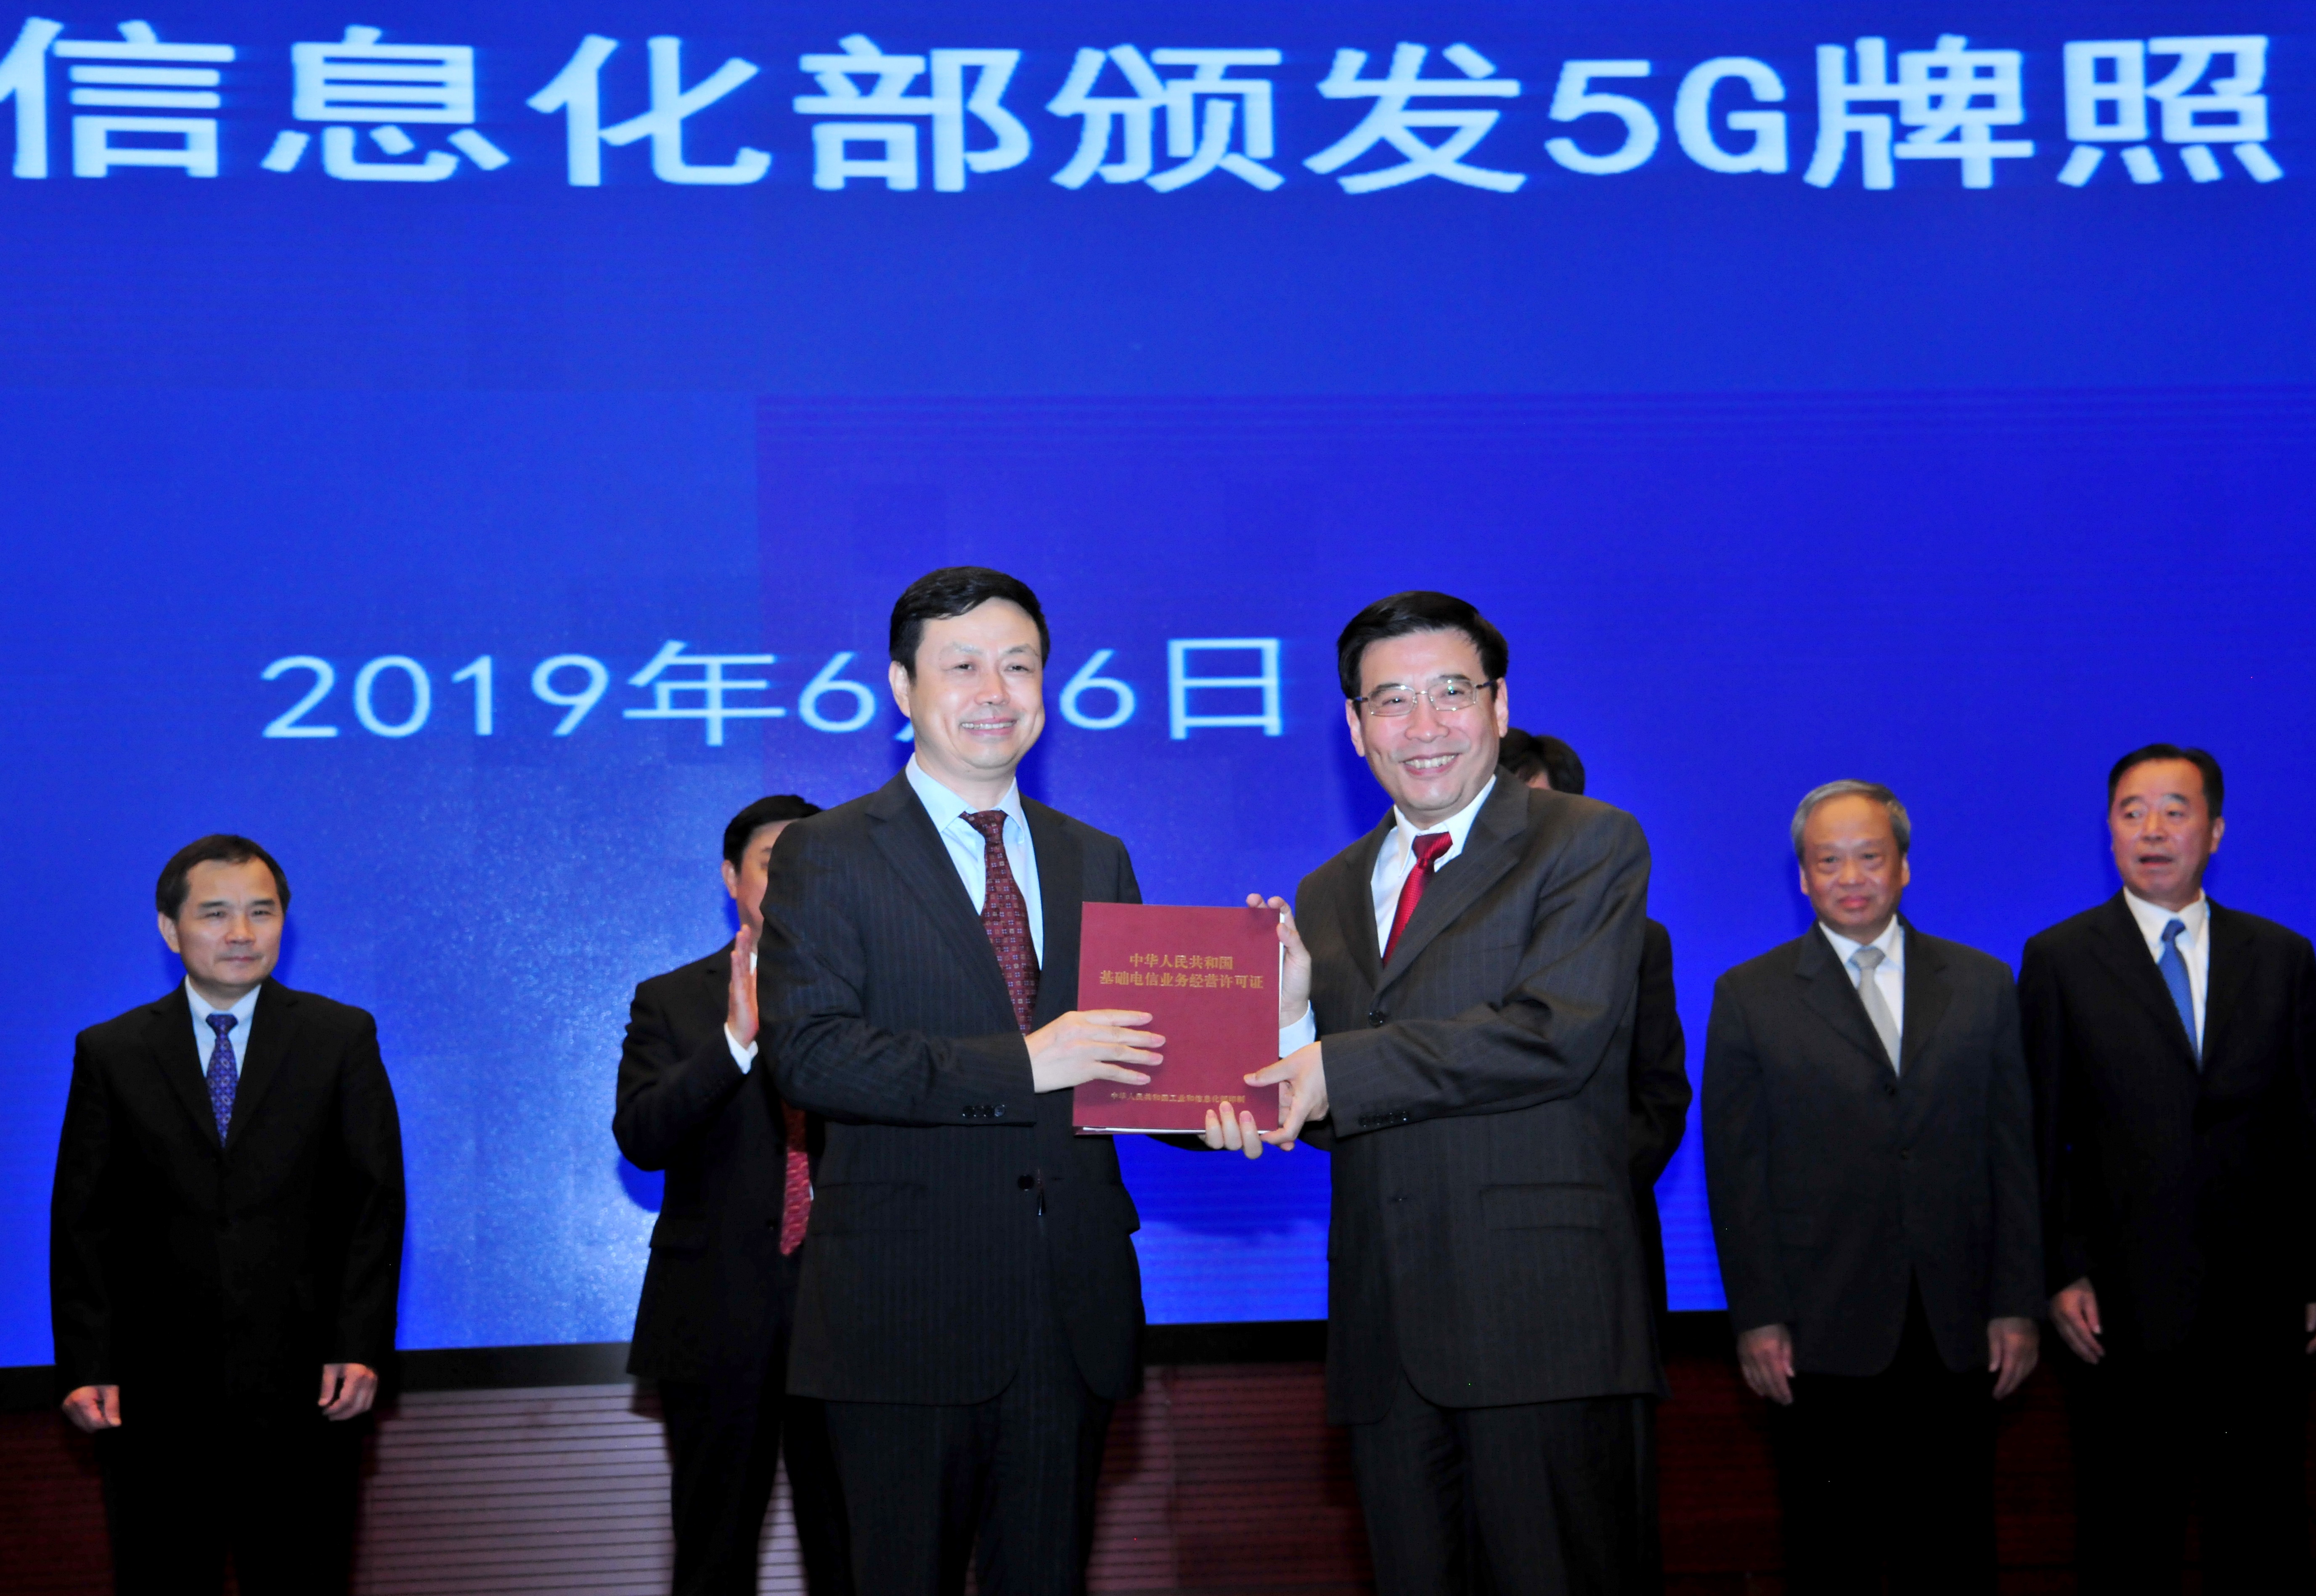 中国移动获颁5G牌照 9月将在超40个城市提供5G服务